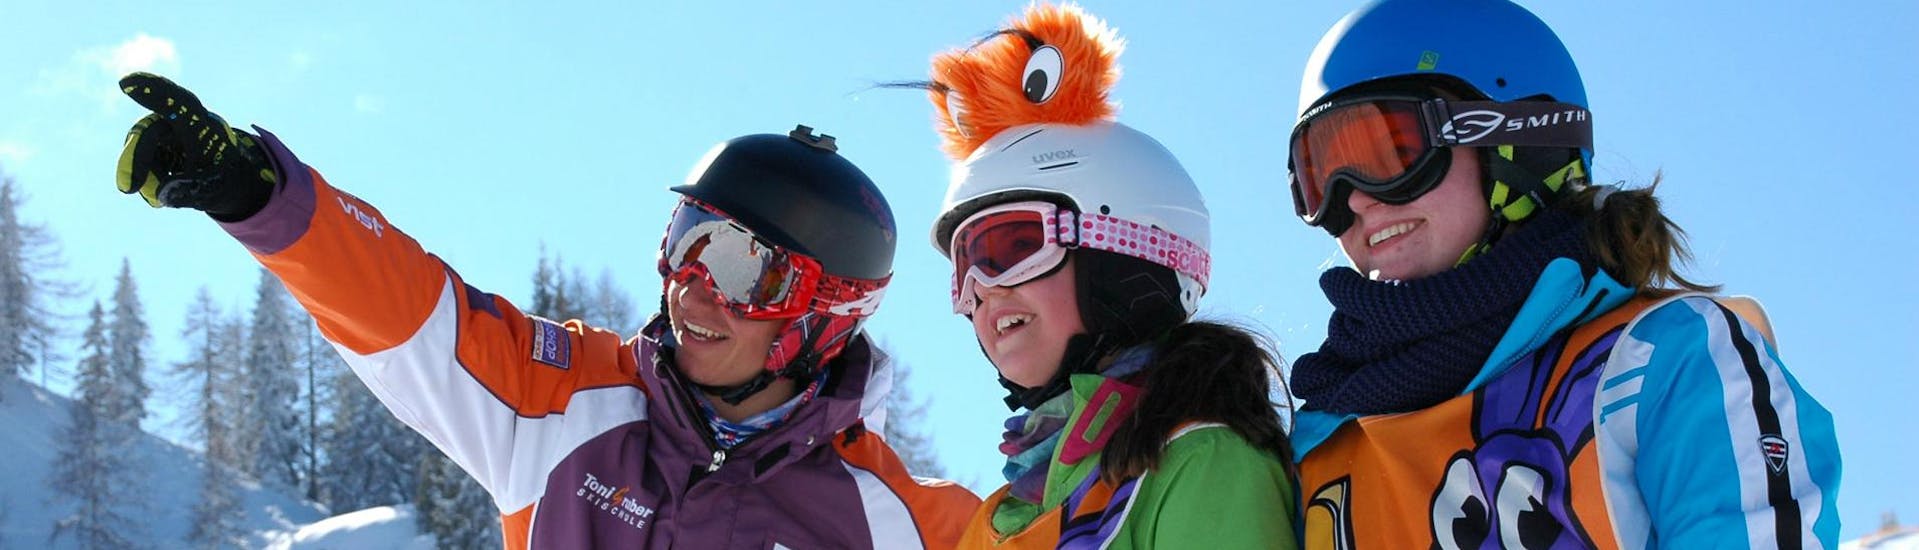 Cours de ski enfants "Wild Rabbits" (4-14 ans) - Skieurs Expérimentés à Großarl.